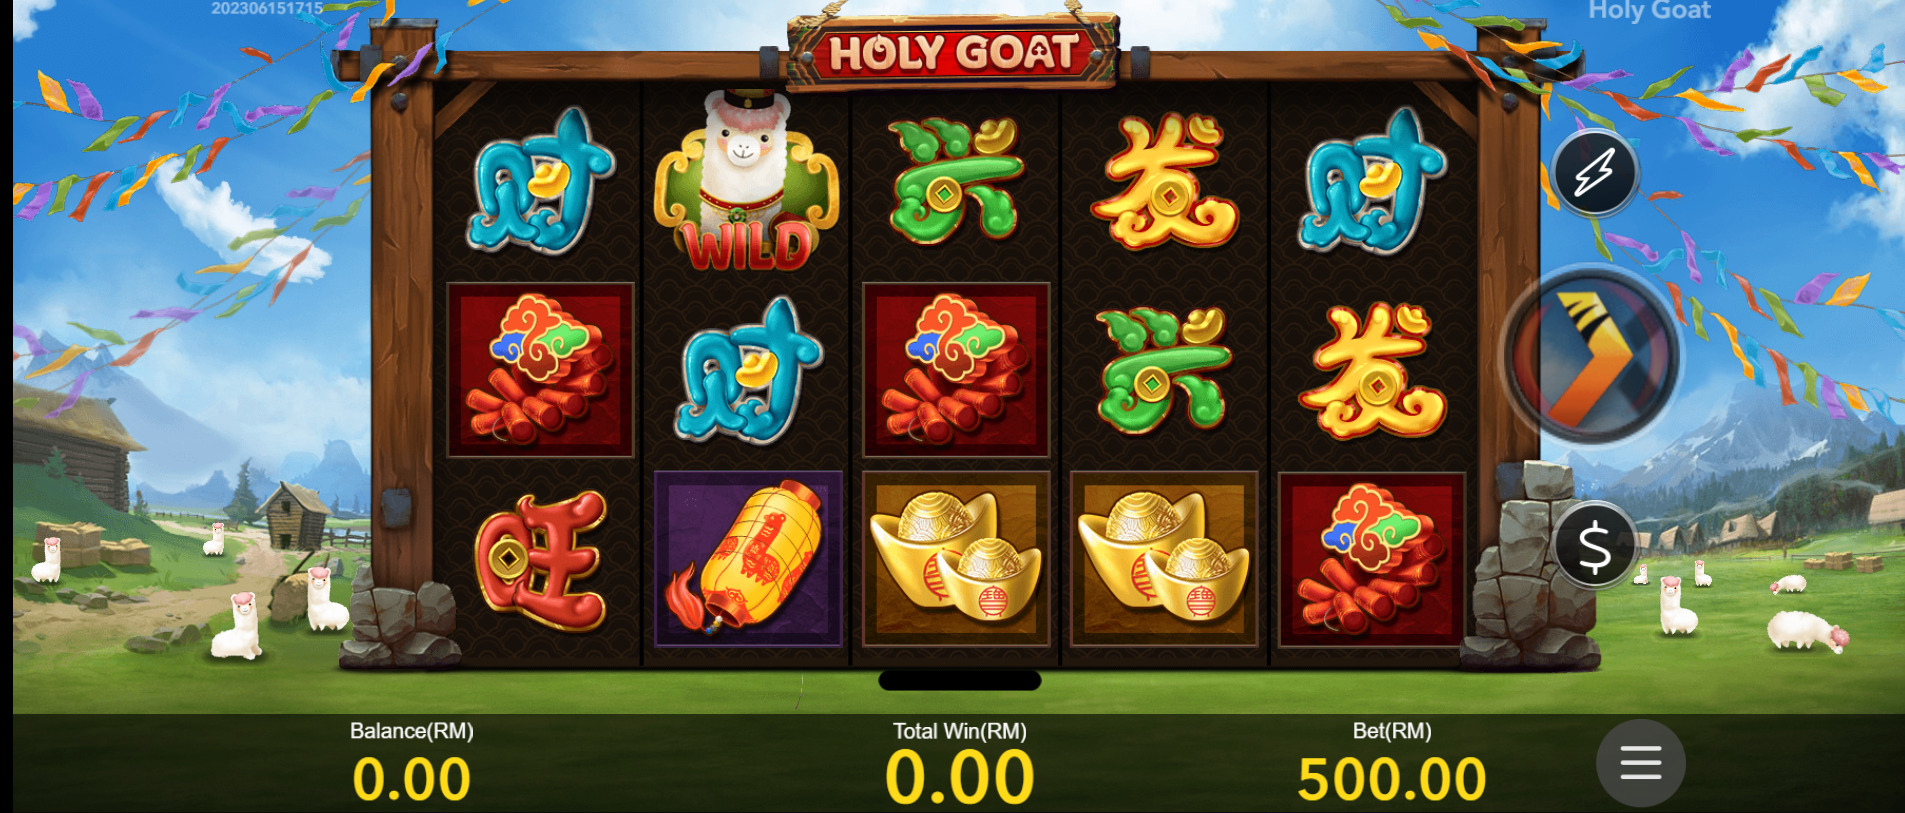 Holy Goat - Nextspin Slot